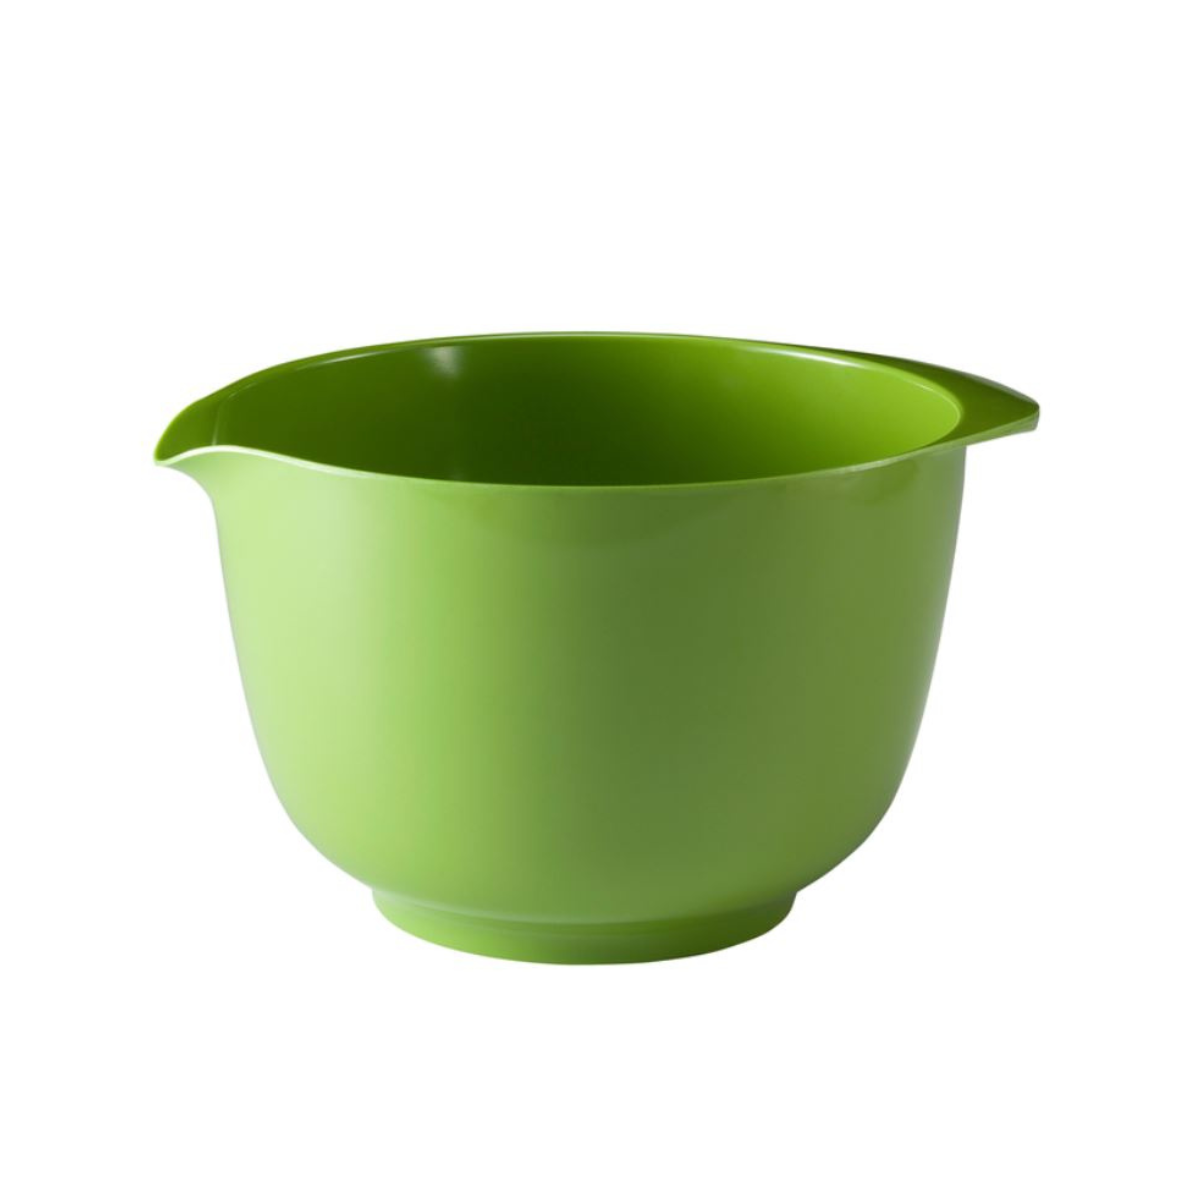 Gourmac 1-1/2 Liter Melamine Mixing Bowl Green 